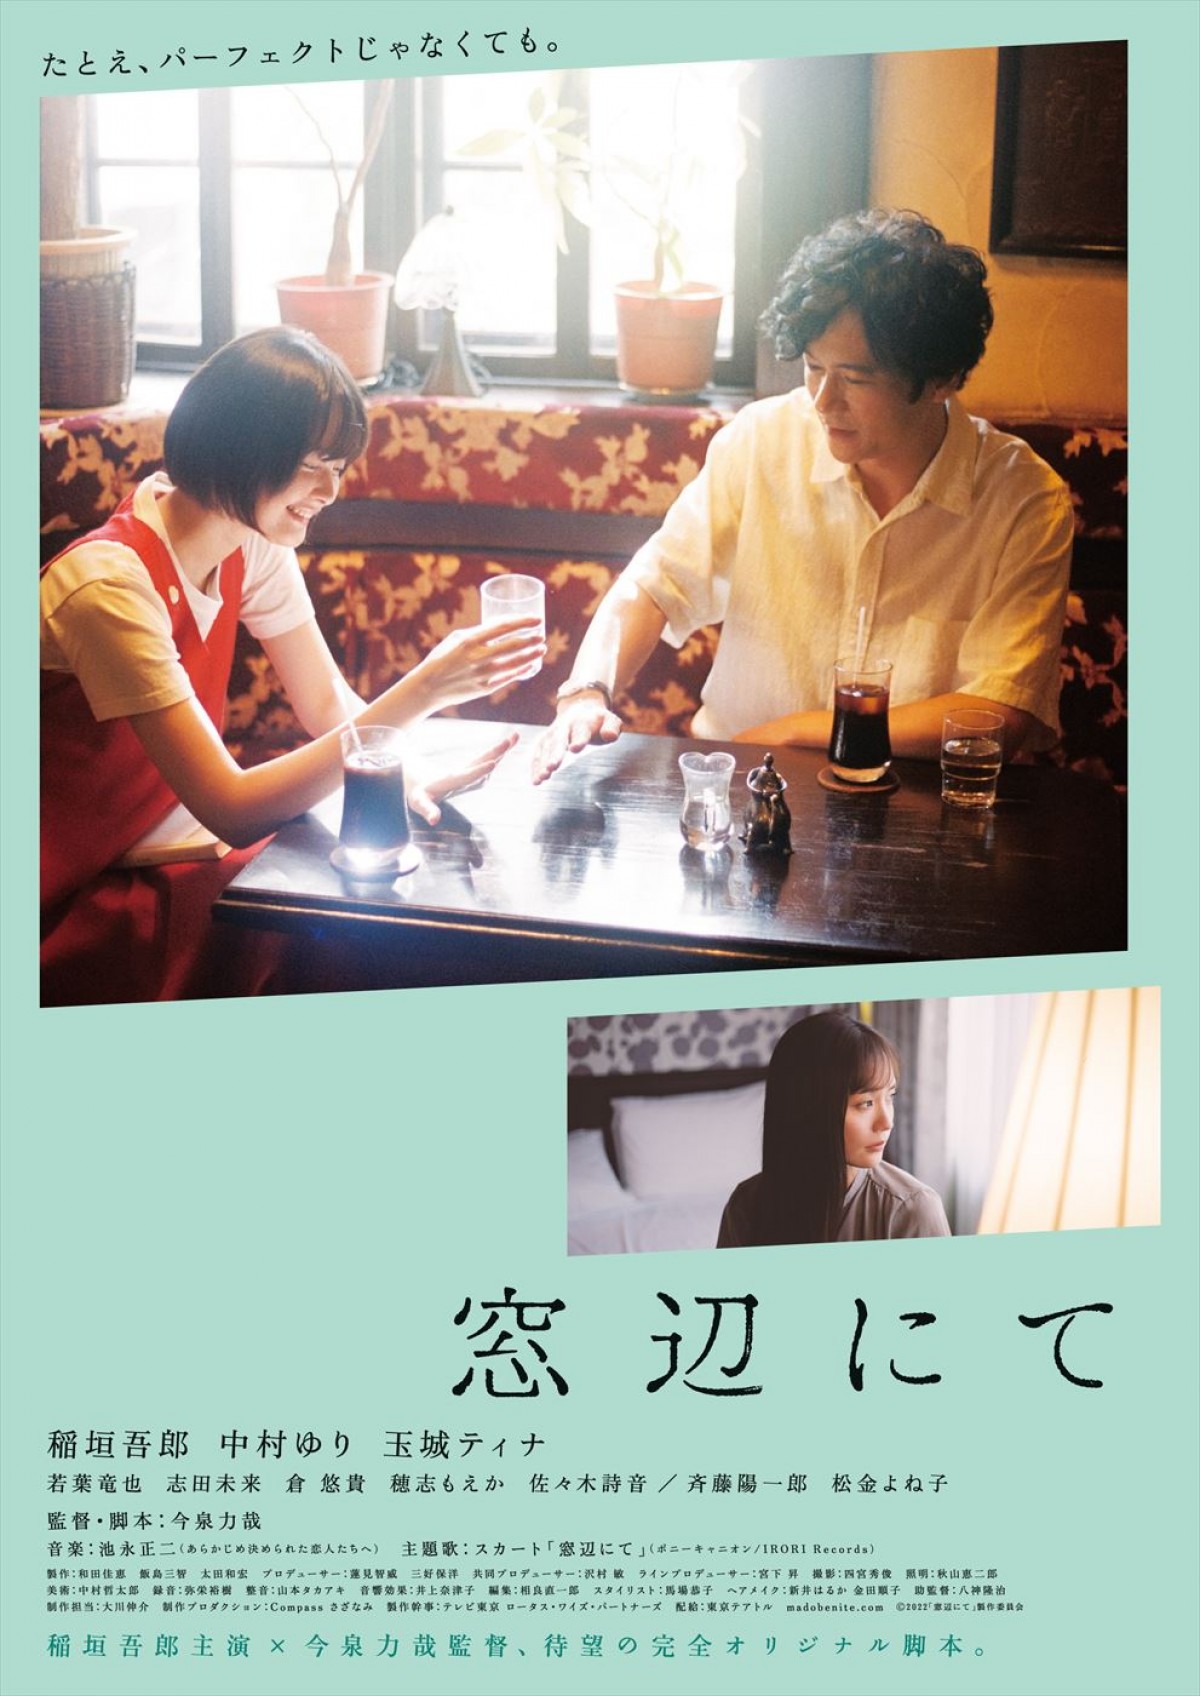 稲垣吾郎主演『窓辺にて』、悩みを持つ主人公と高校生作家の世代を超えた友情が描かれる予告編解禁